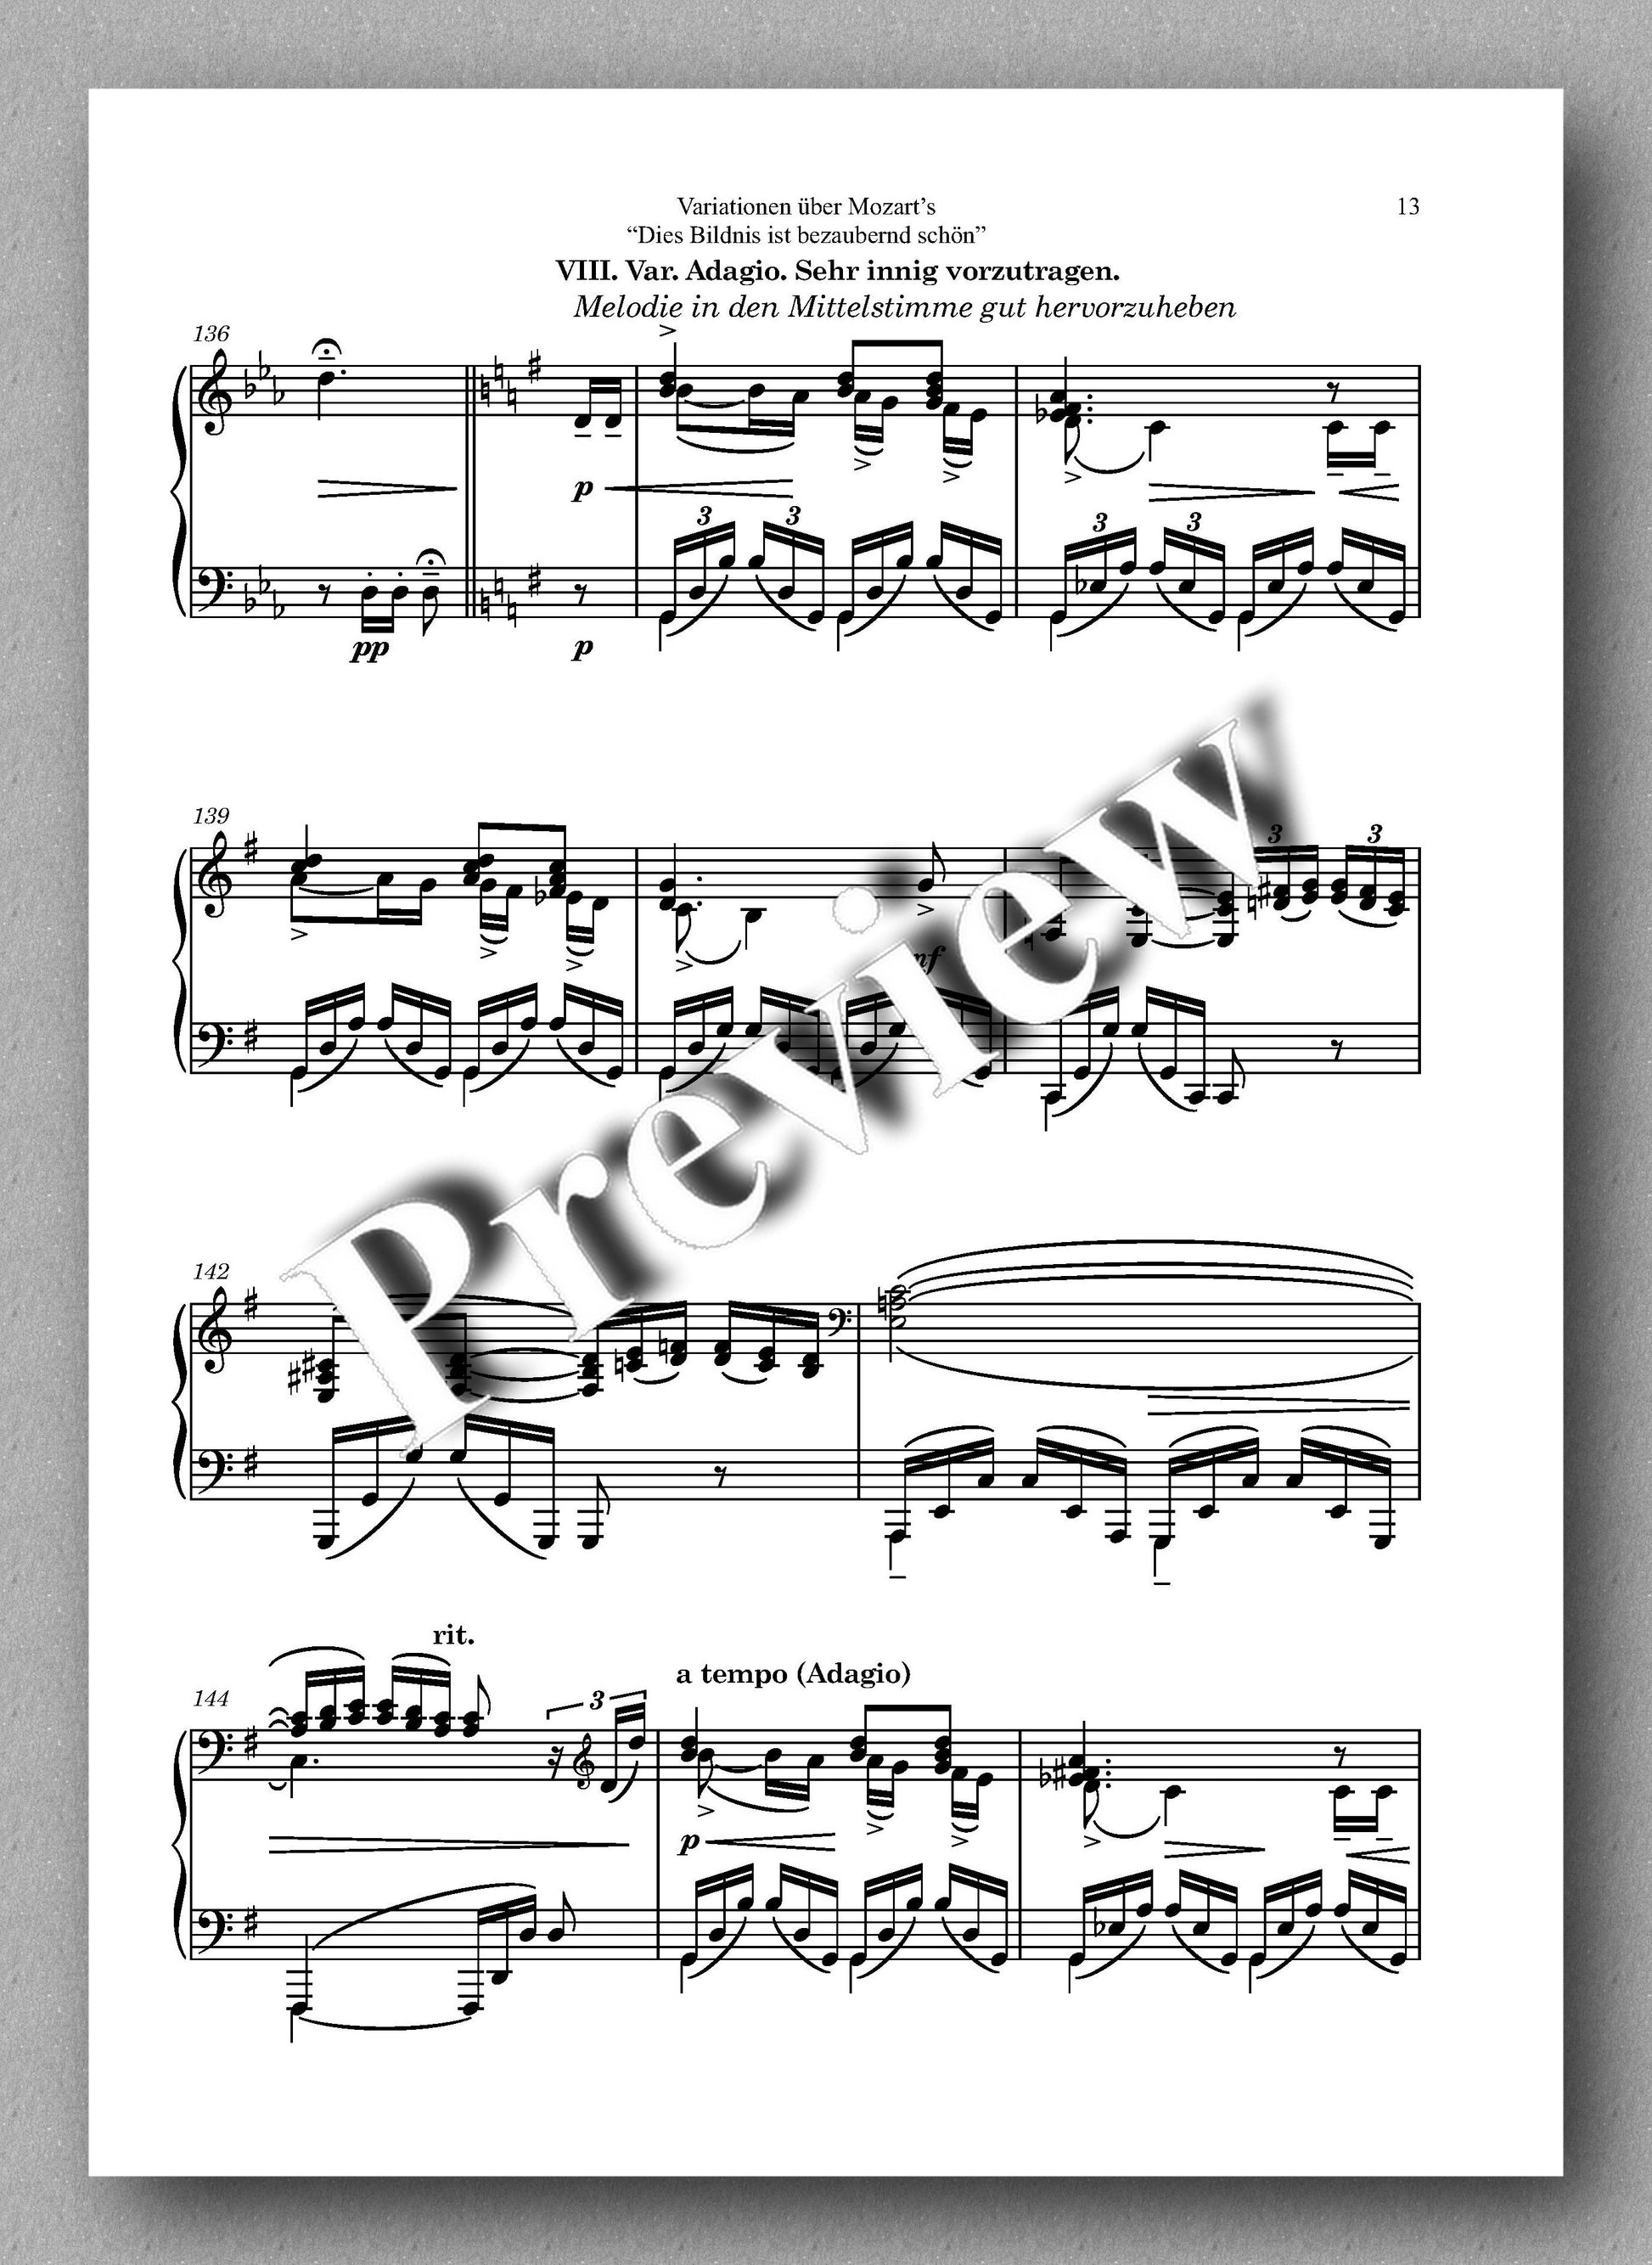 Ferdinand Rebay, Variationen über Mozart's "Dies Bildnis ist bezaubernd schön" - music score 3